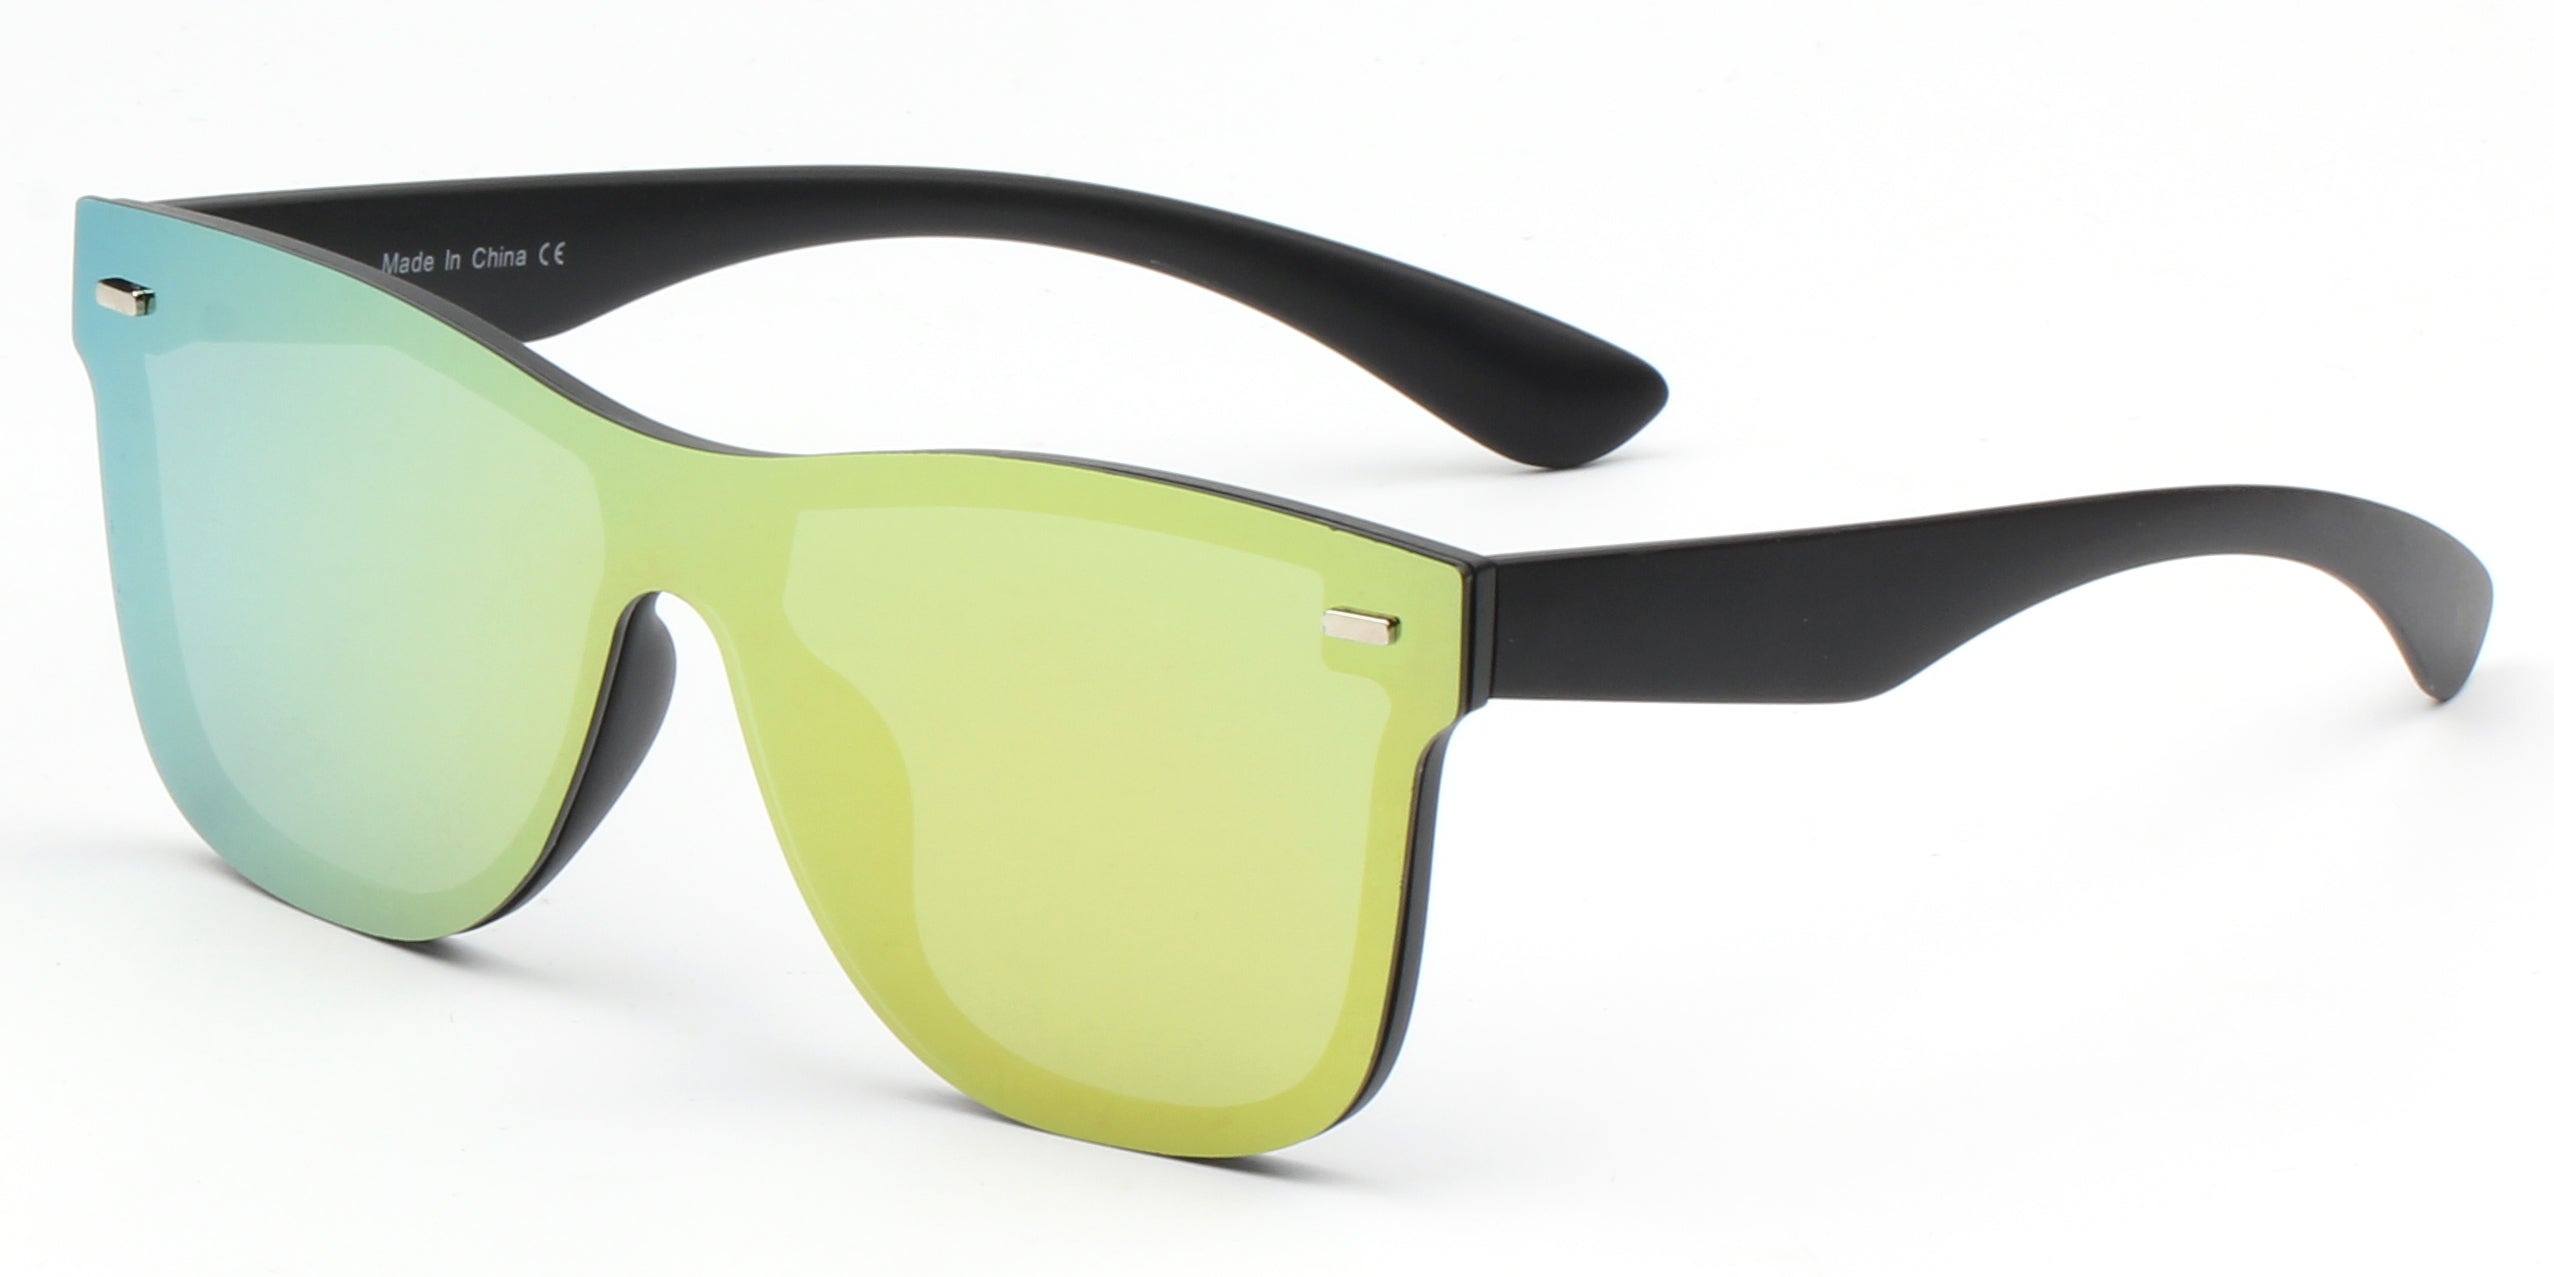 S2010 - Retro Square Flat Top Mirrored Fashion Sunglasses PeachGreen